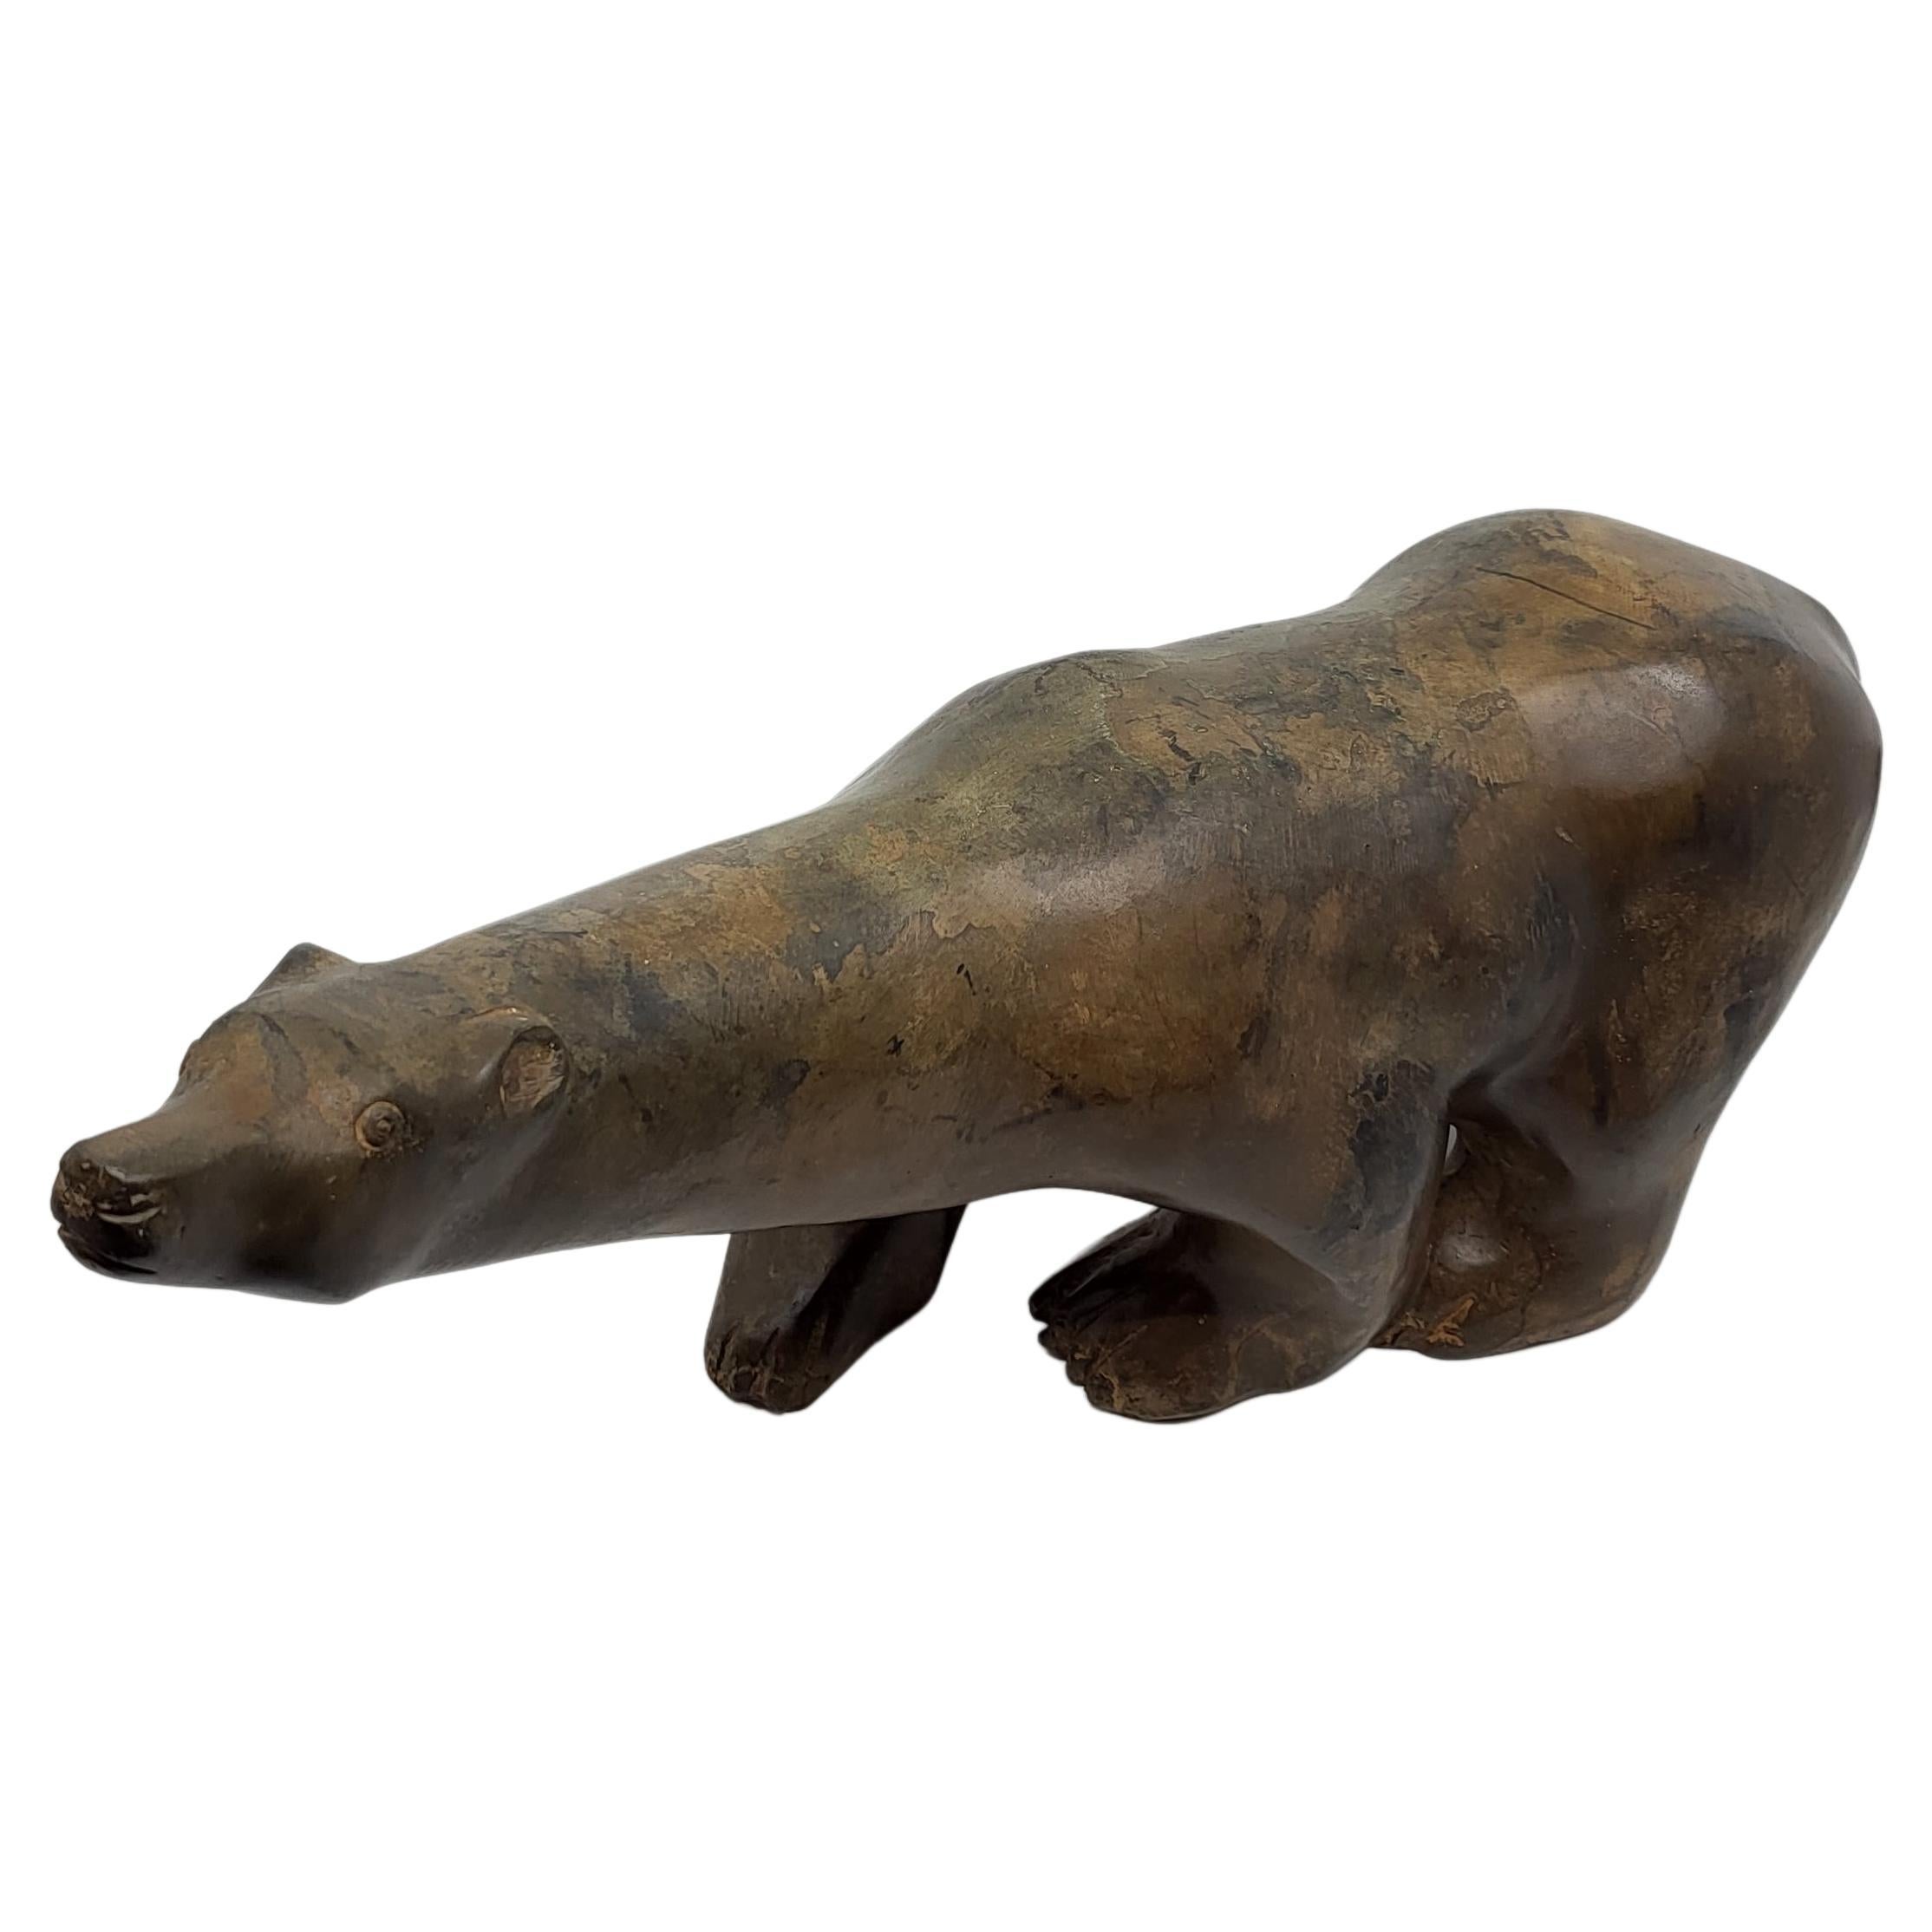 Pierre Chenet  était un sculpteur animalier français du XXe siècle. Ses sculptures de bronze d'animaux sont célèbres pour leur mouvement réaliste. Il utilise sa technique dite de 